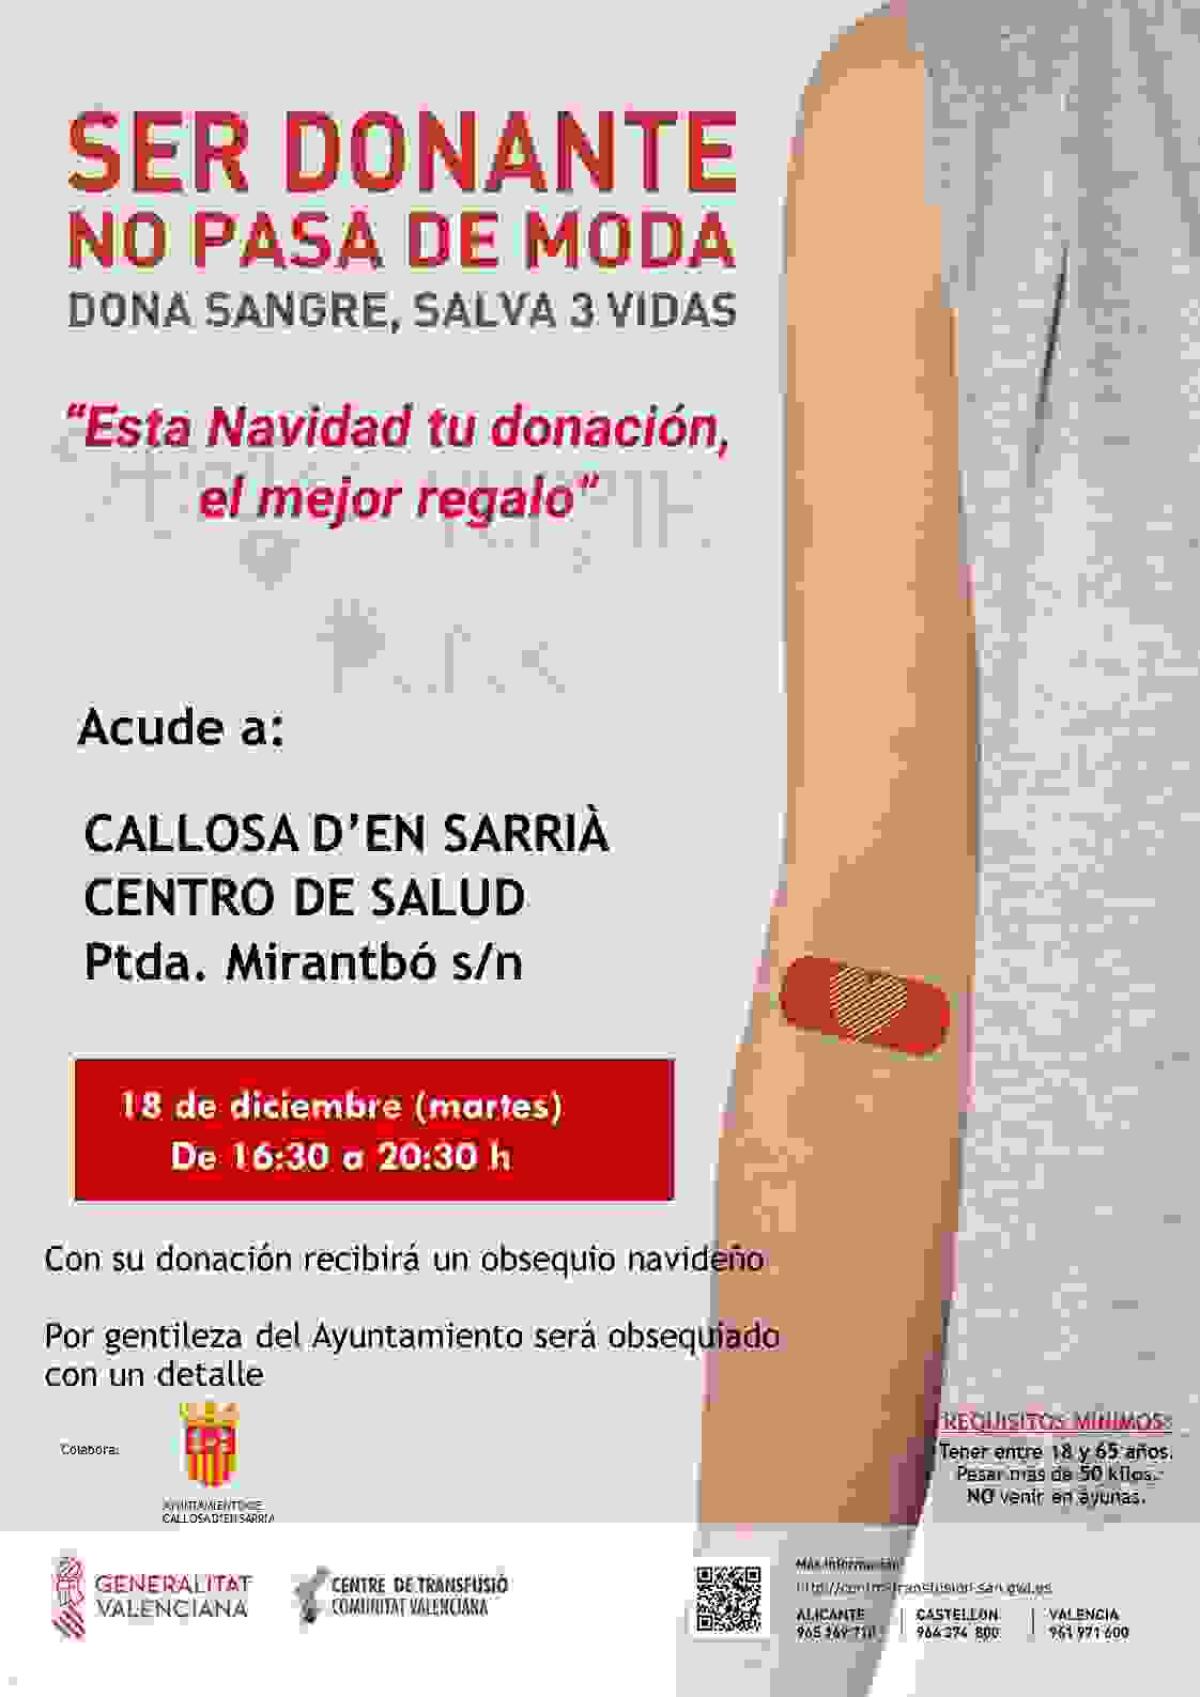 Donación de Sangre el próximo 18 de diciembre en el Centro de Salud de Callosa d’en Sarrià